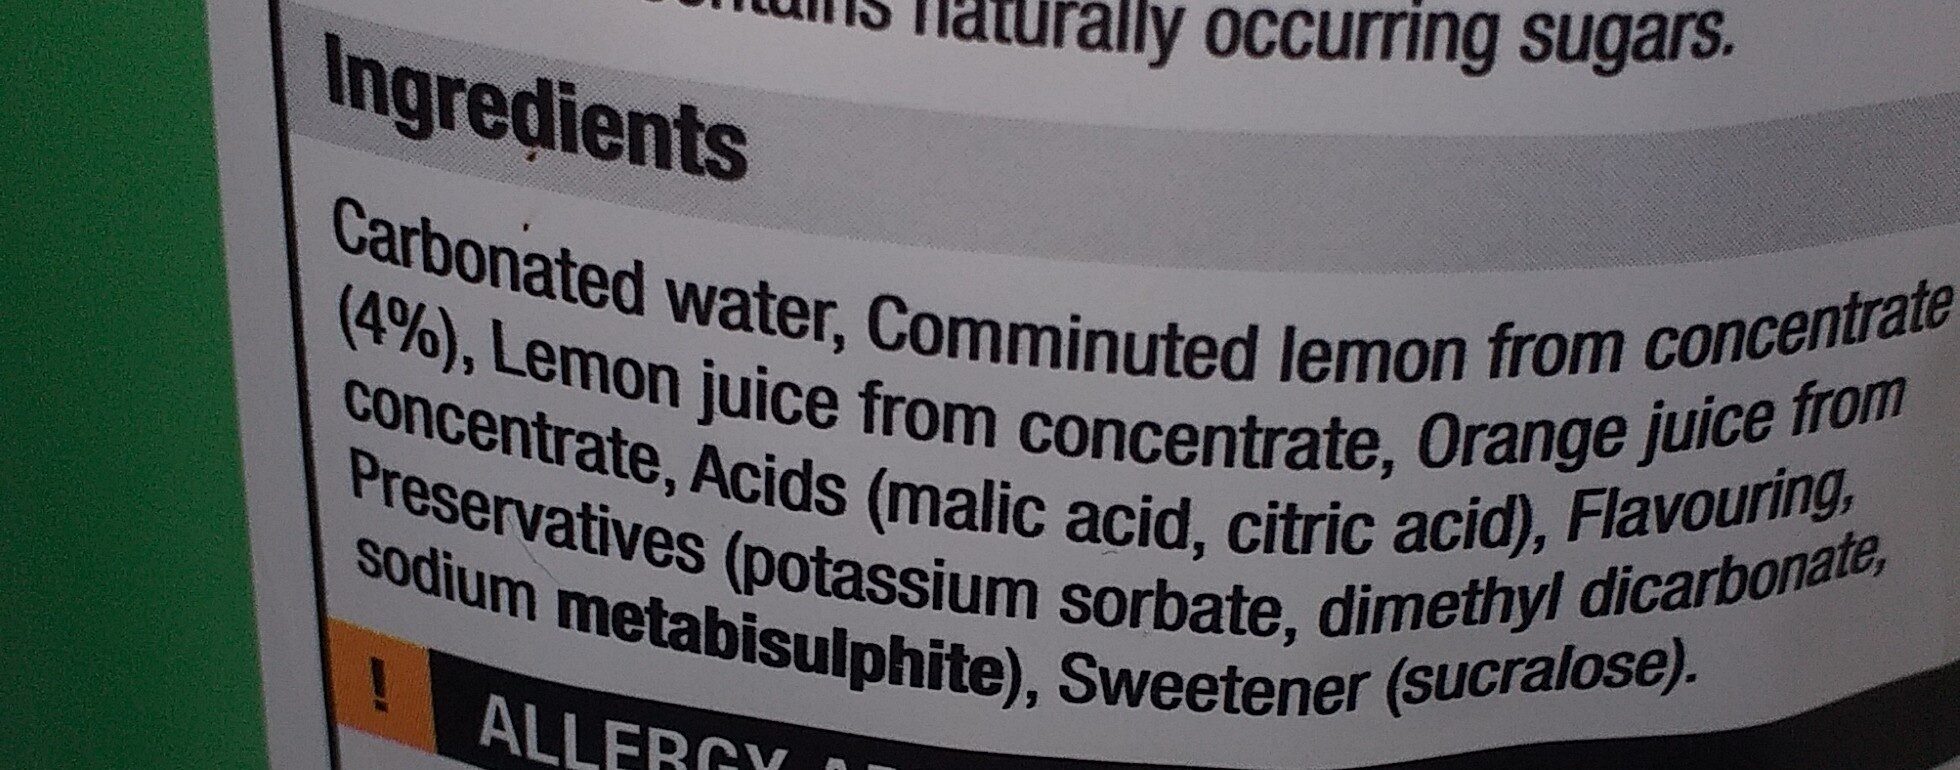 Cloudy lemonade - Ingredients - en